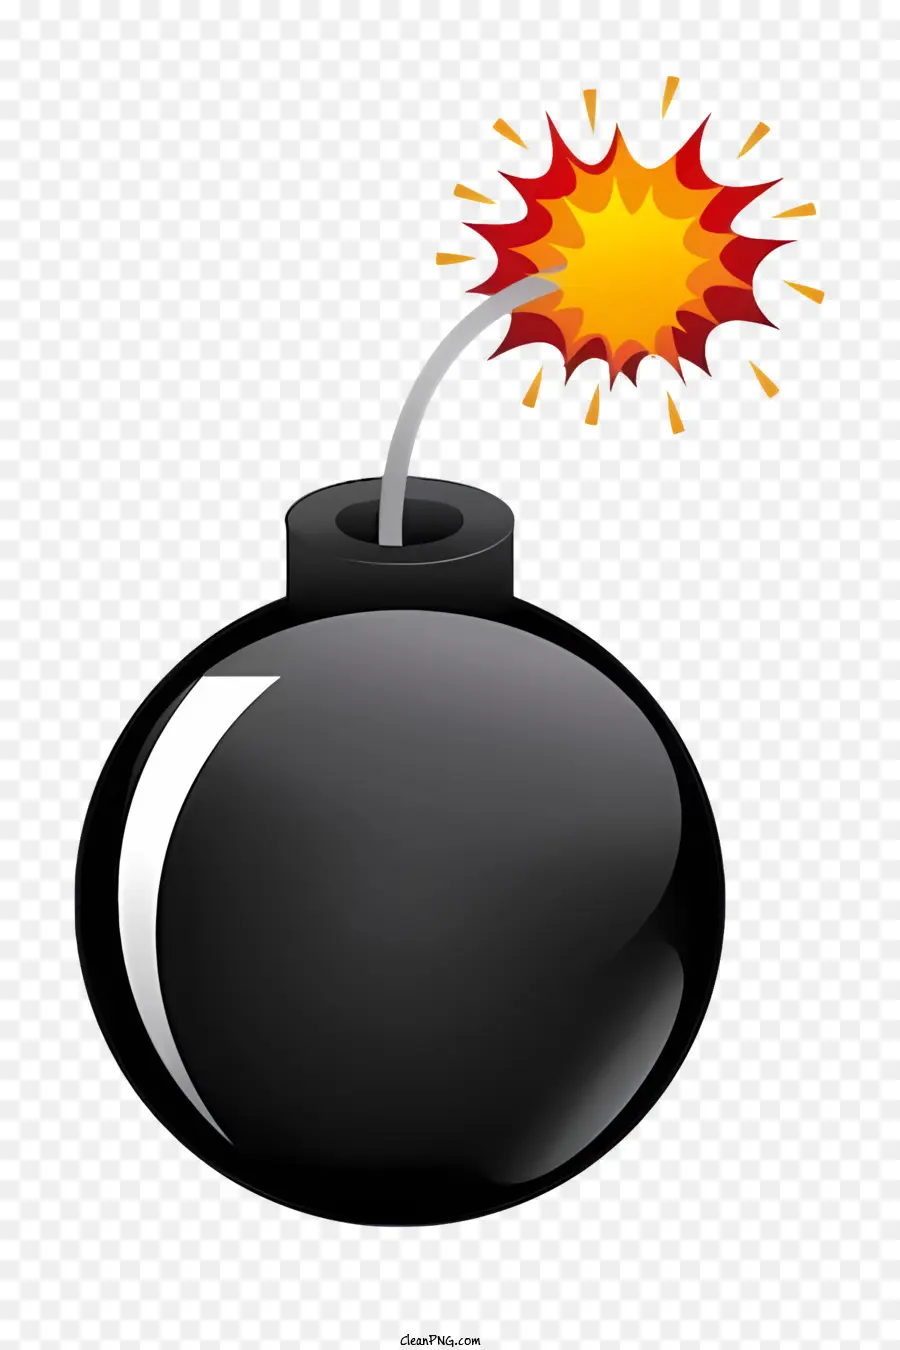 Timer Bomb Bomba Bomb Flare pericolo esplosivo - Bomba nera con bagliore rosso su sfondo nero